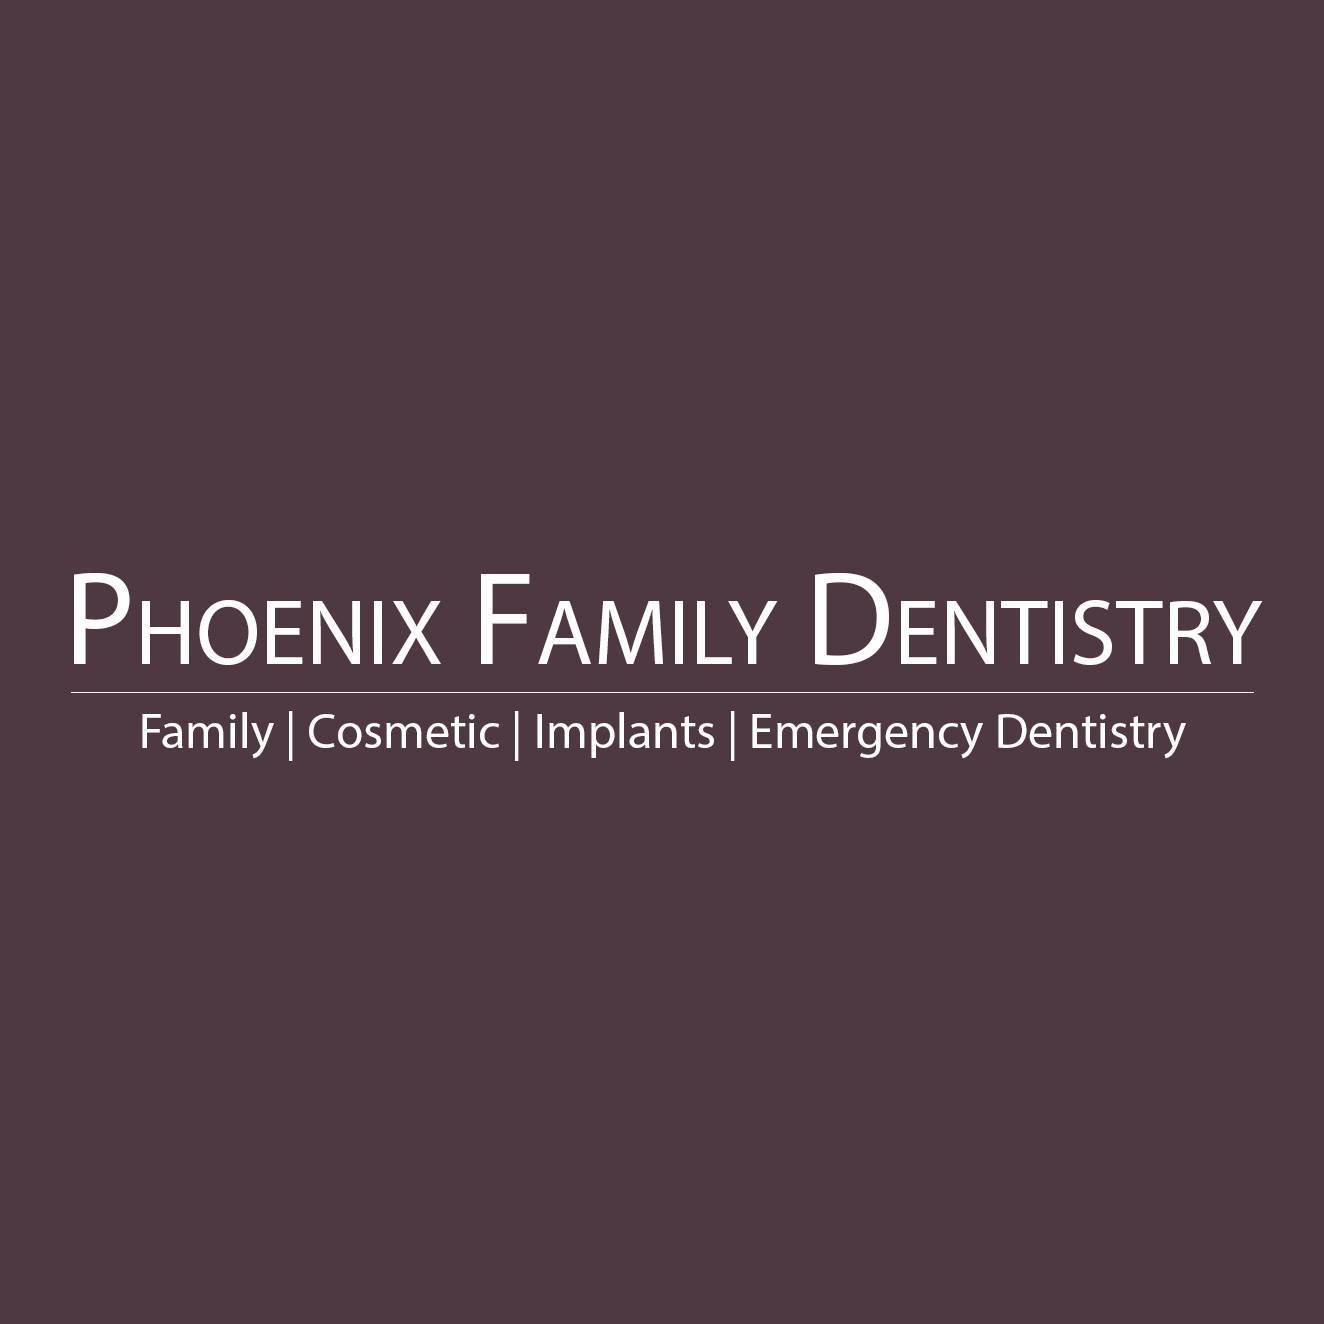 Company logo of Phoenix Family Dentistry